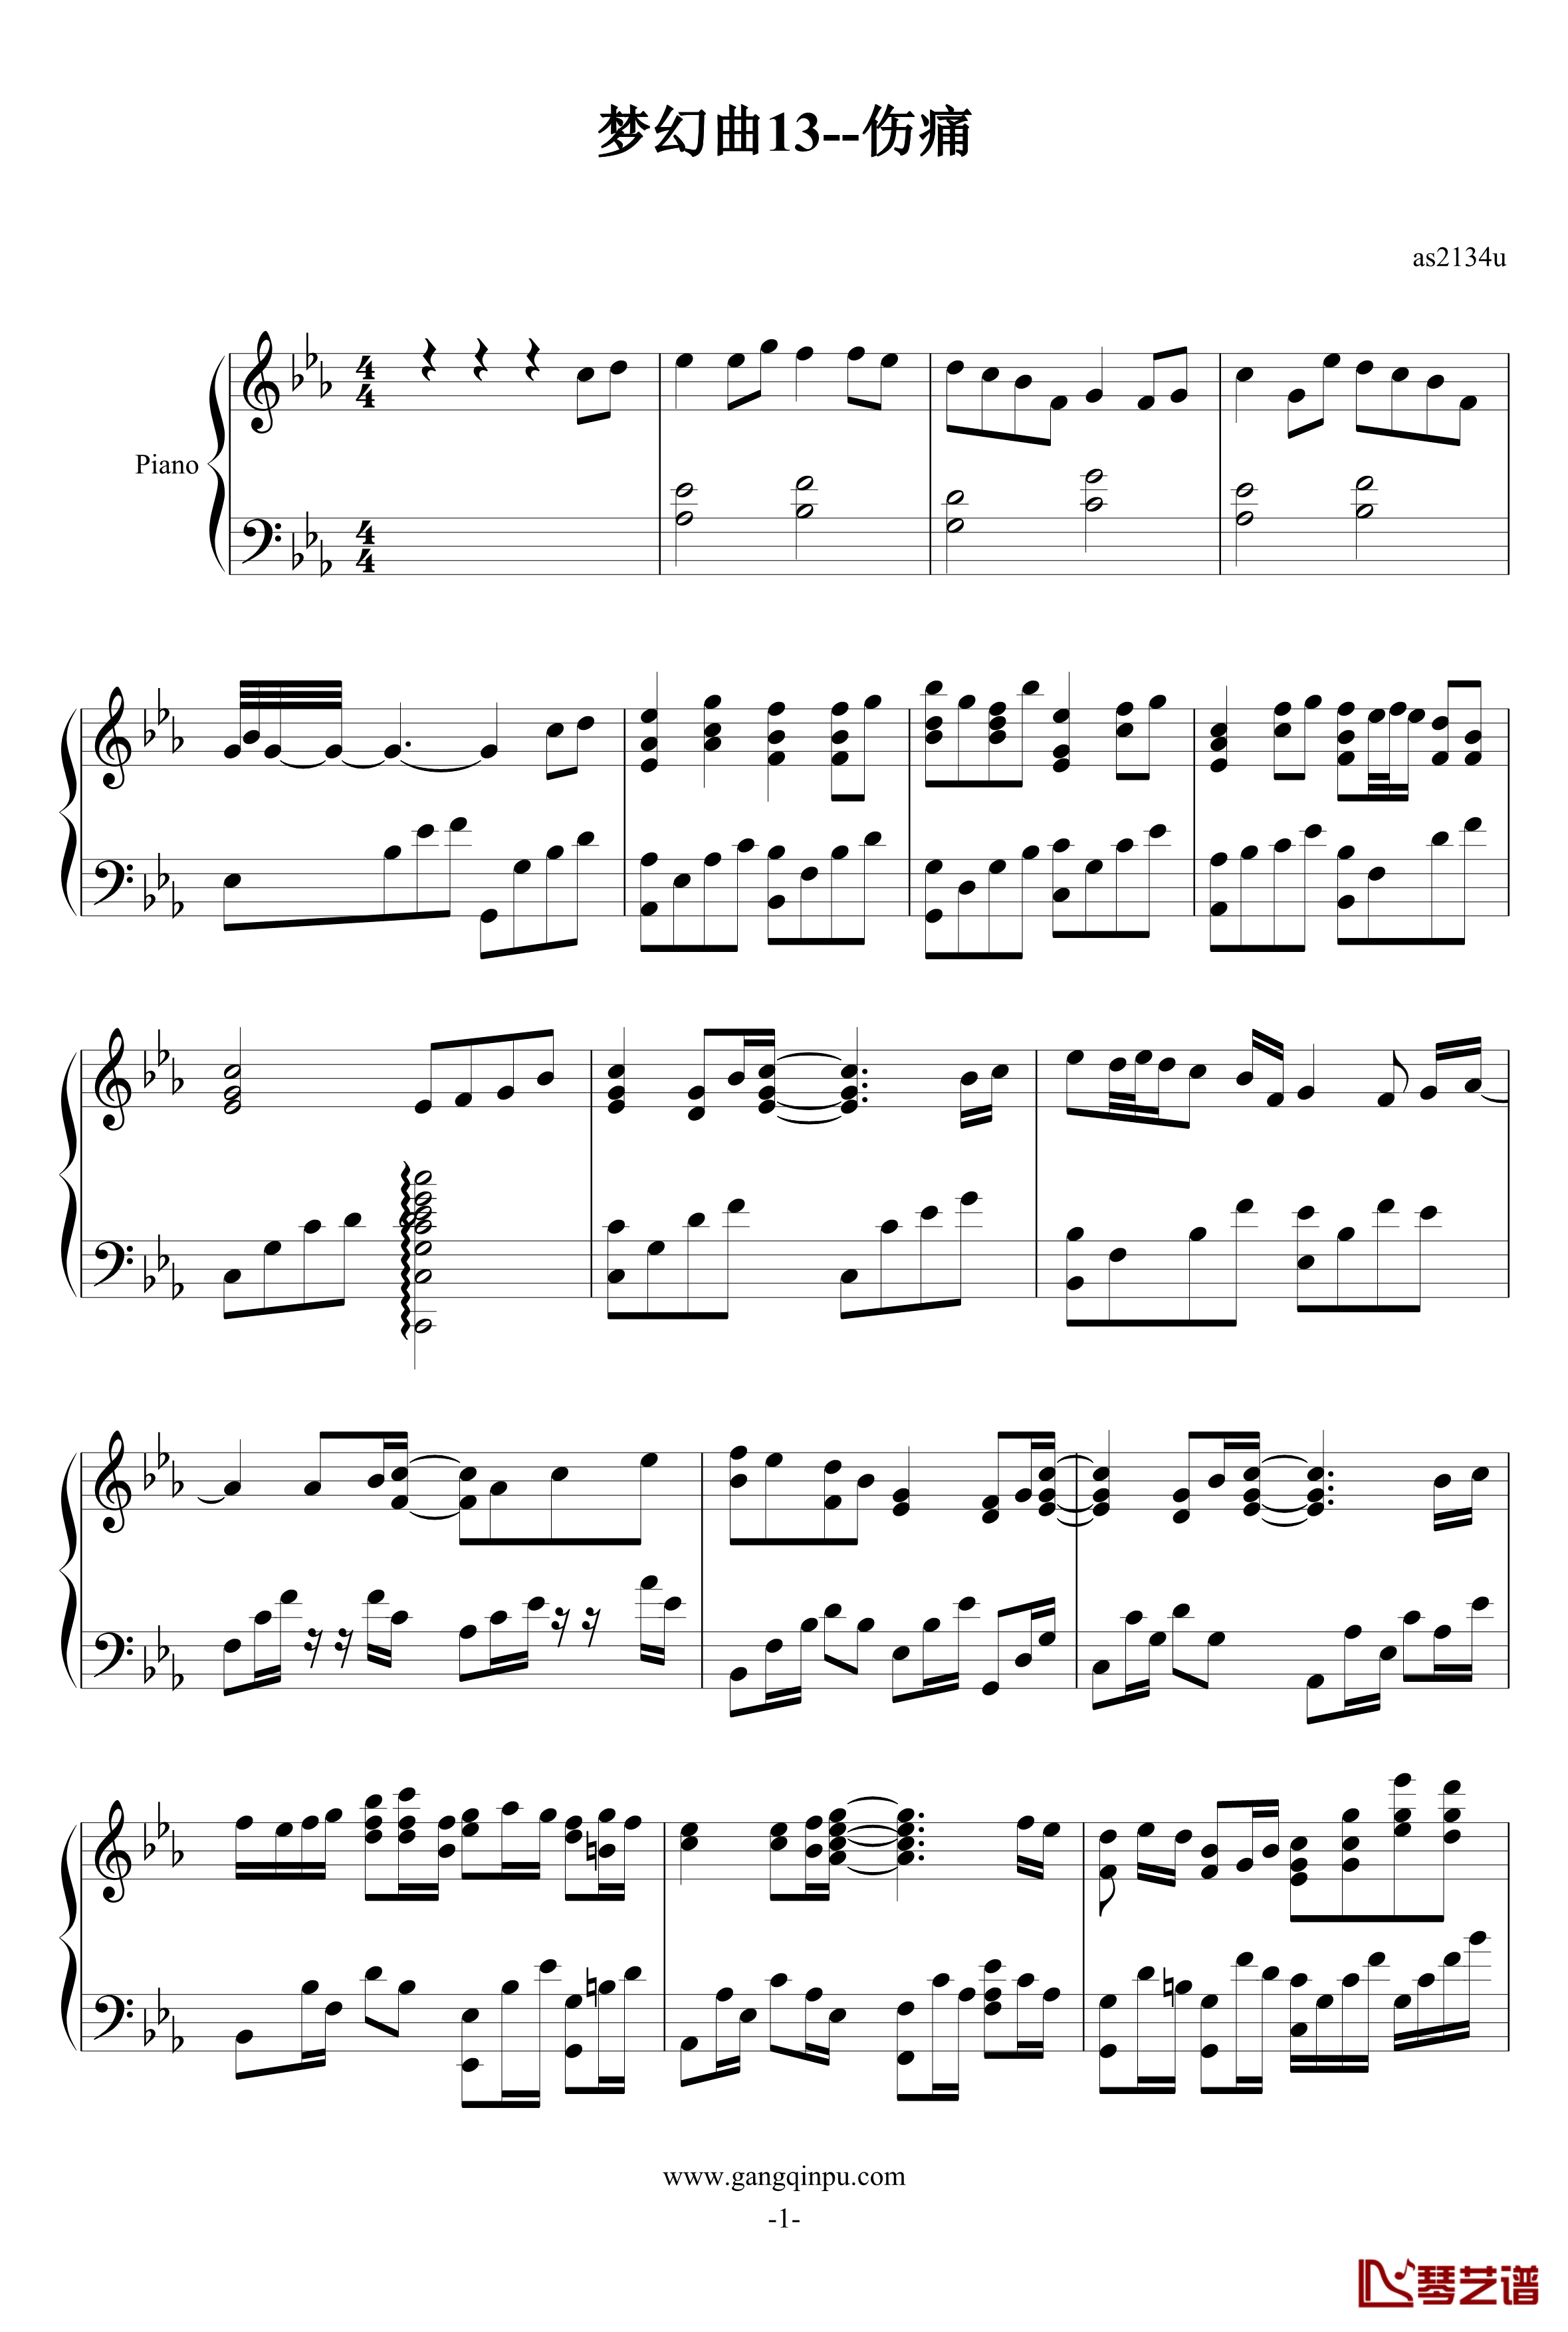 梦幻曲13--伤痛钢琴谱-as21341